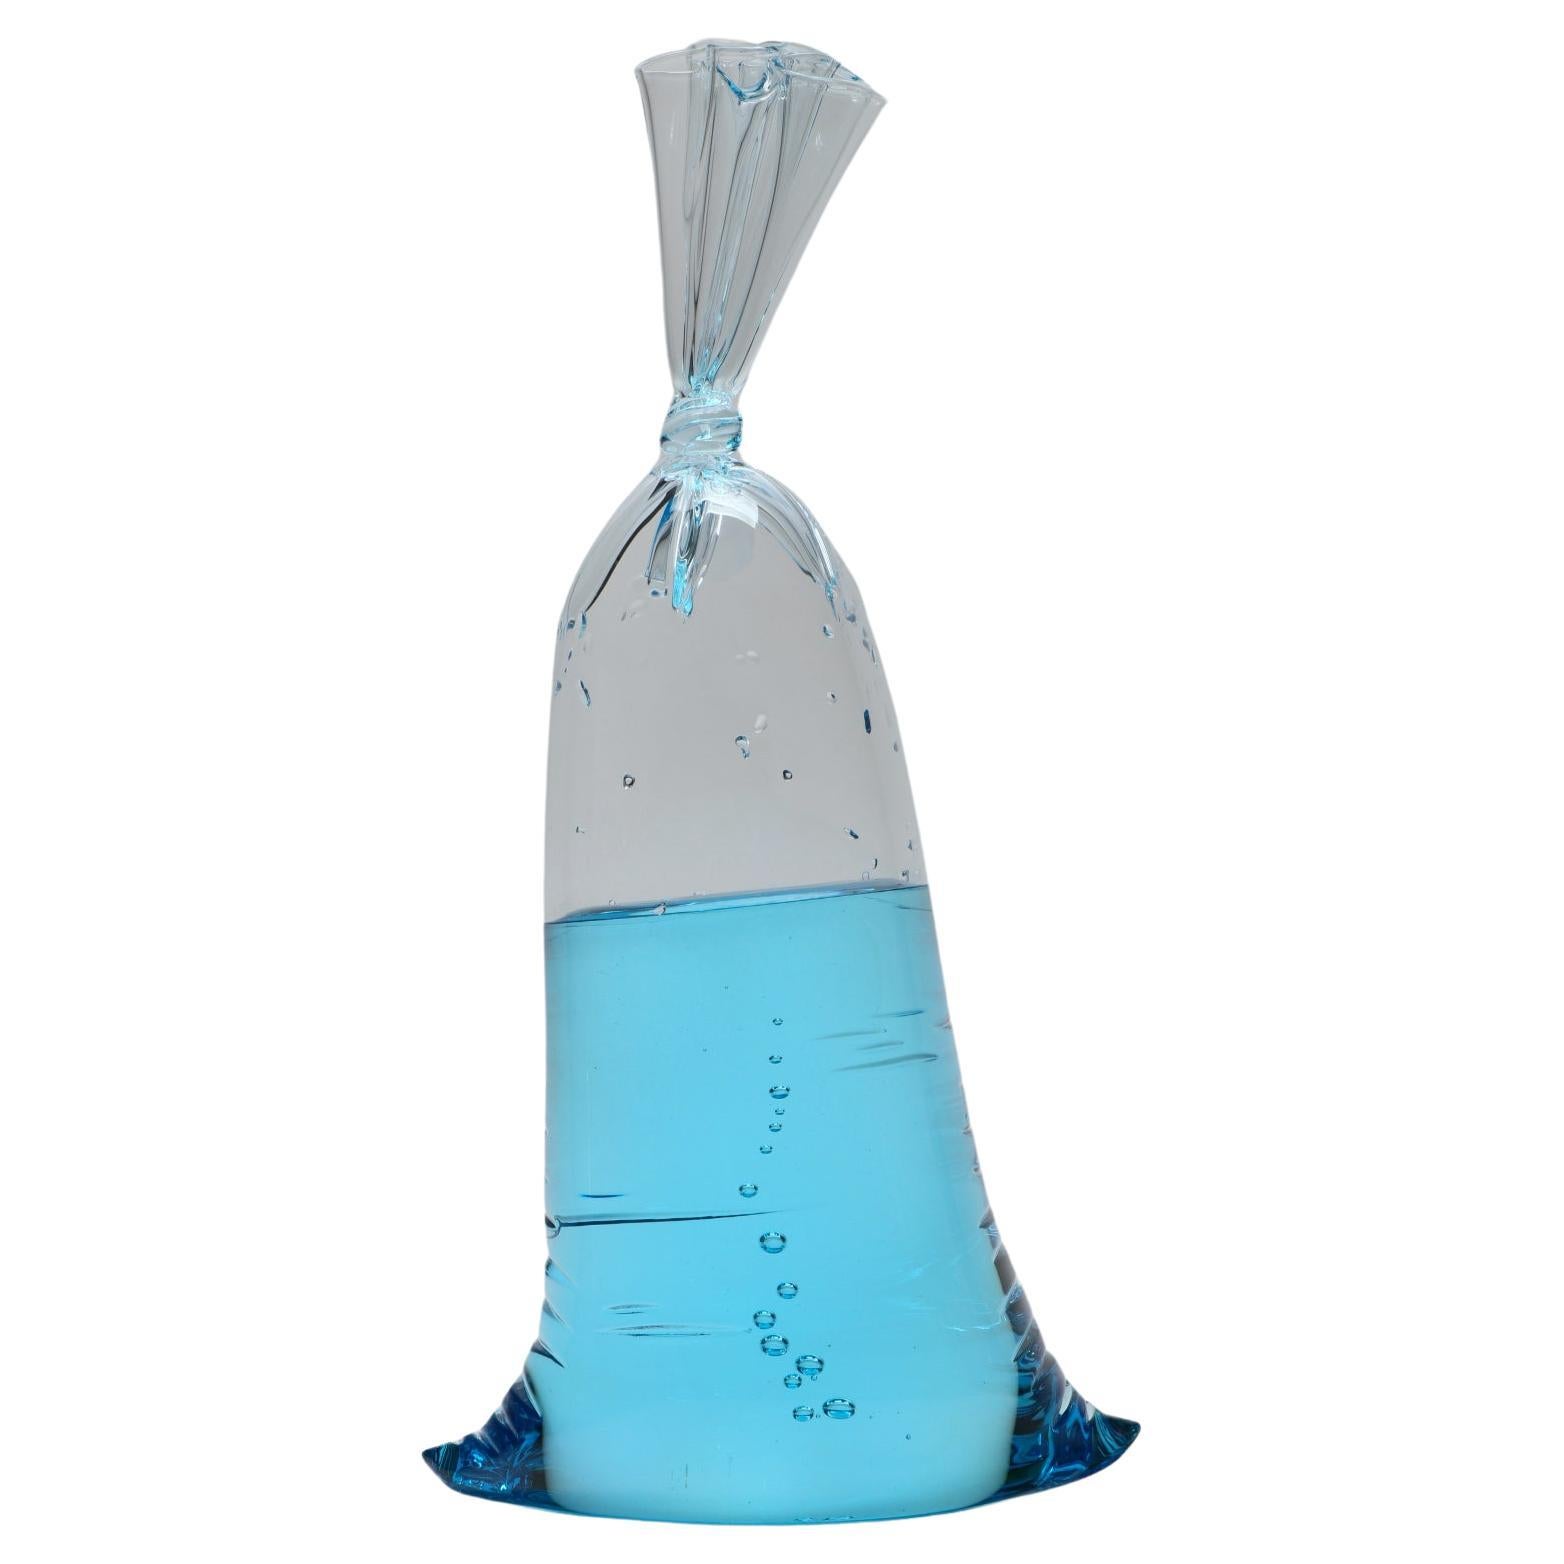 Grand sac à eau en verre bleu - sculpture en verre hyperréaliste de Dylan Martinez